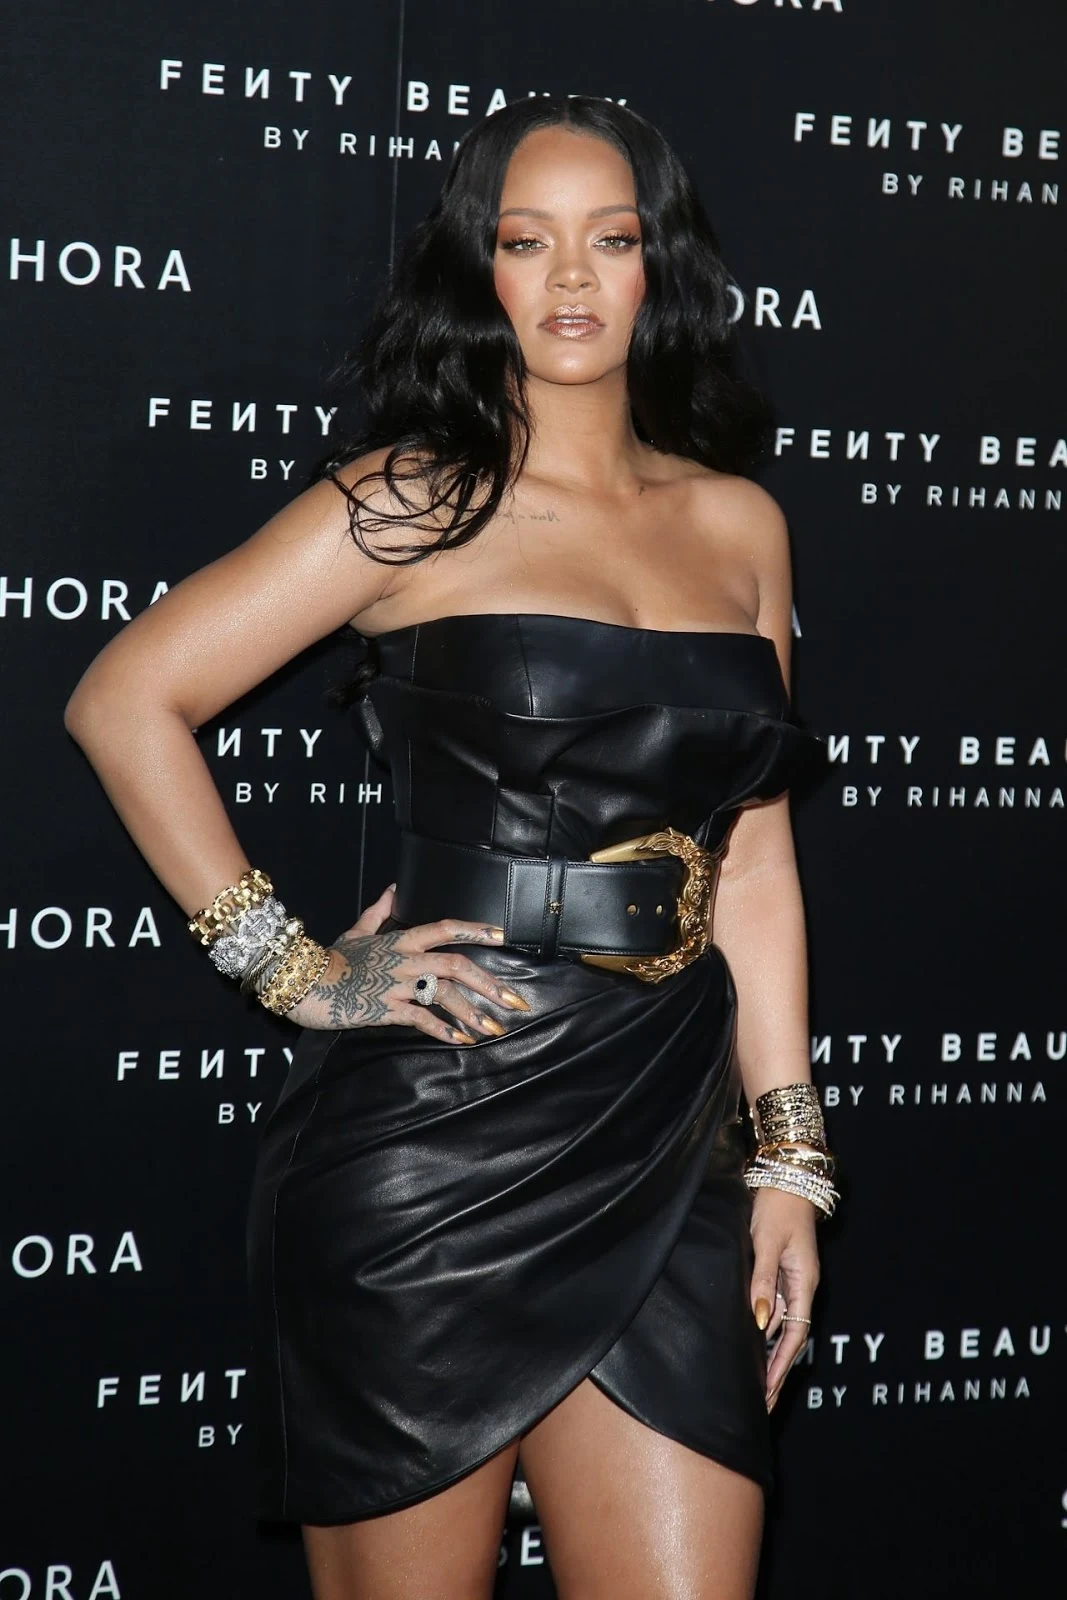 Rihanna – “Fenty” by Rihanna Makeup Launch in Milan, Italy.